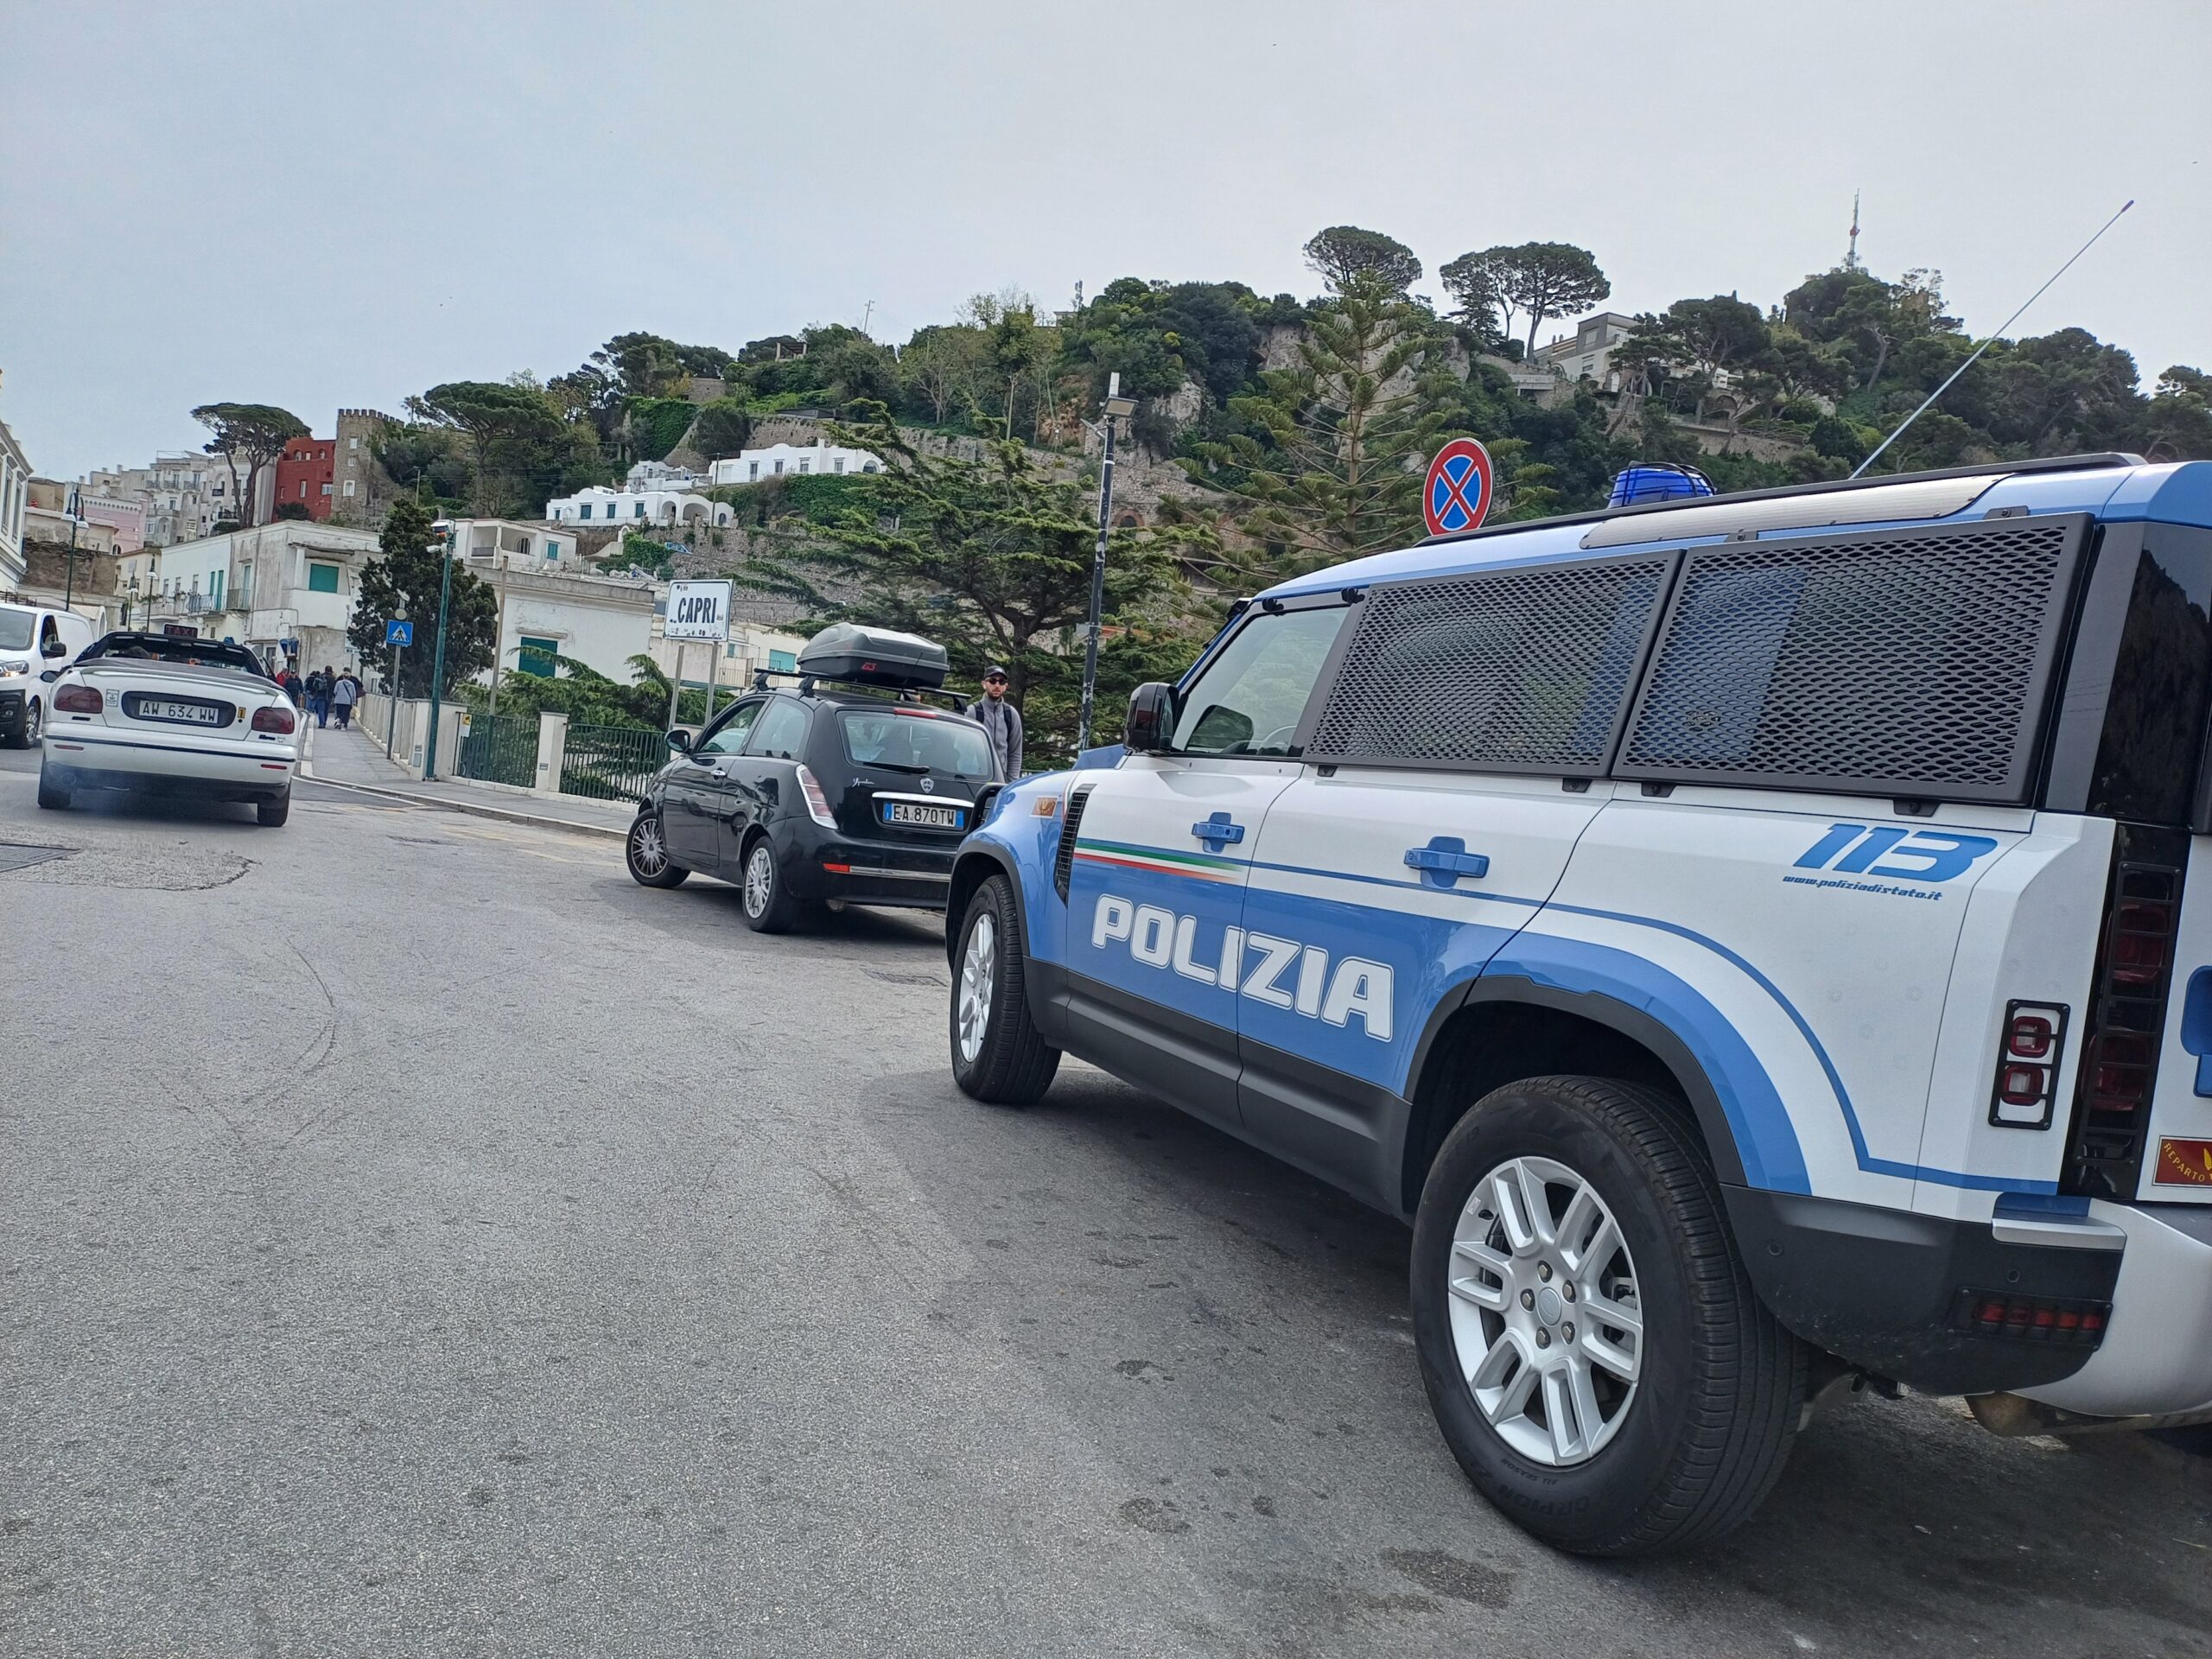 G7: confermata la presenza a Capri del segretario di Stato americano Blinken. Previsto massiccio schieramento di forze dell’ordine sull’isola